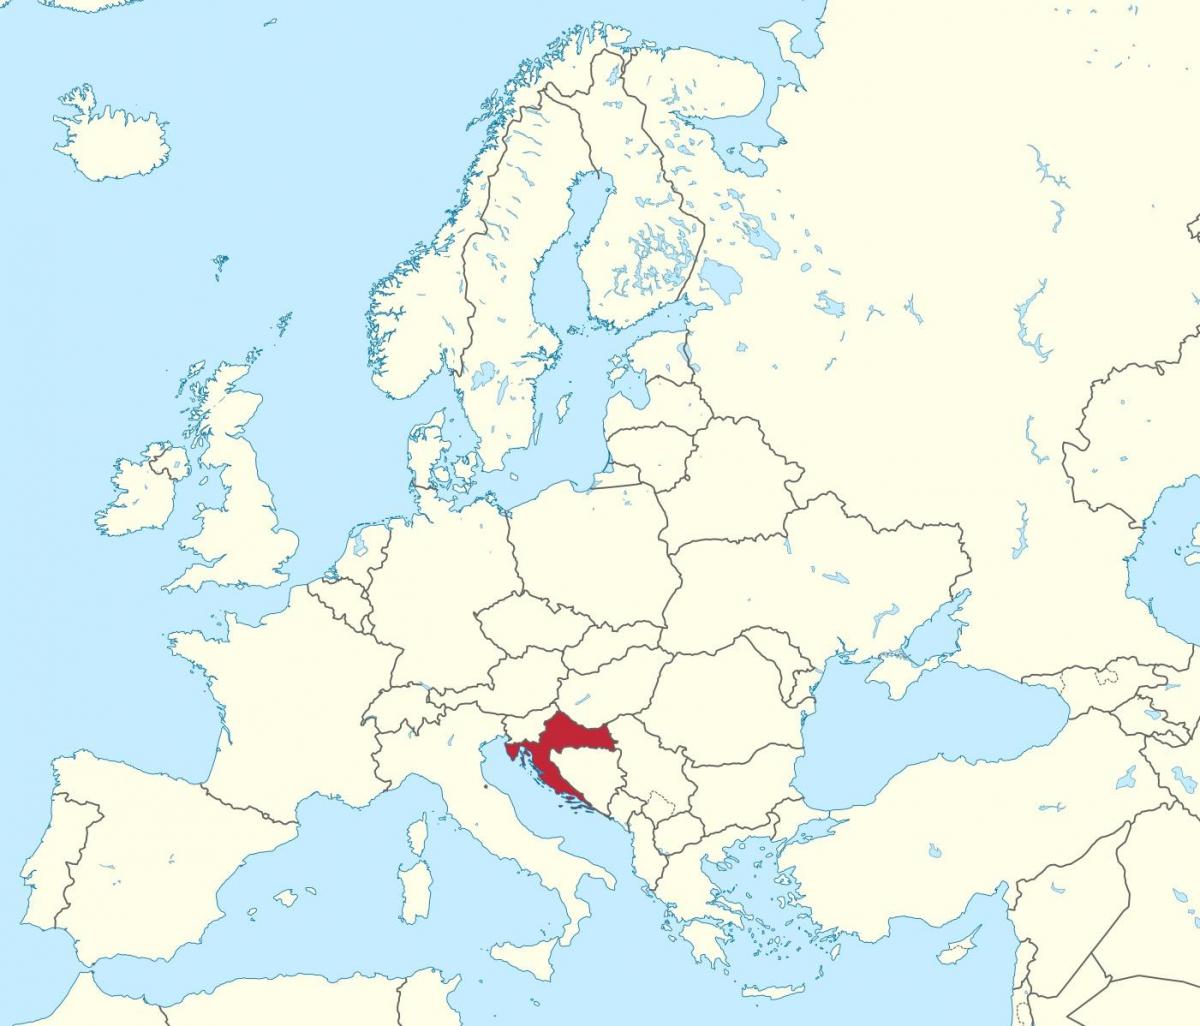 โครเอเชียในแผนที่ของยุโรป